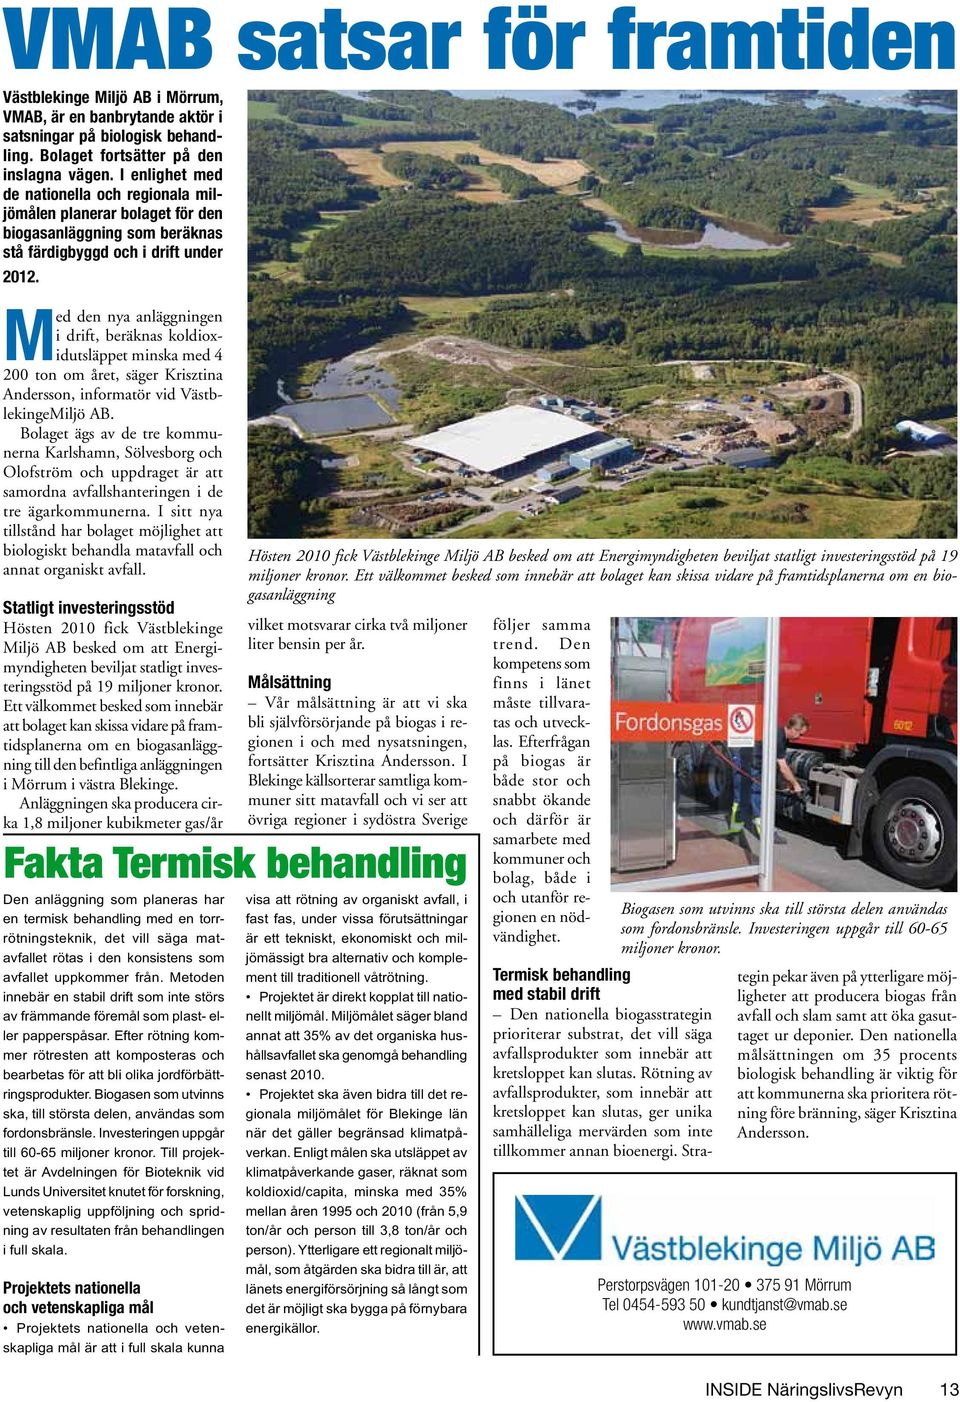 Med den nya anläggningen i drift, beräknas koldioxidutsläppet minska med 4 200 ton om året, säger Krisztina Andersson, informatör vid VästblekingeMiljö AB.